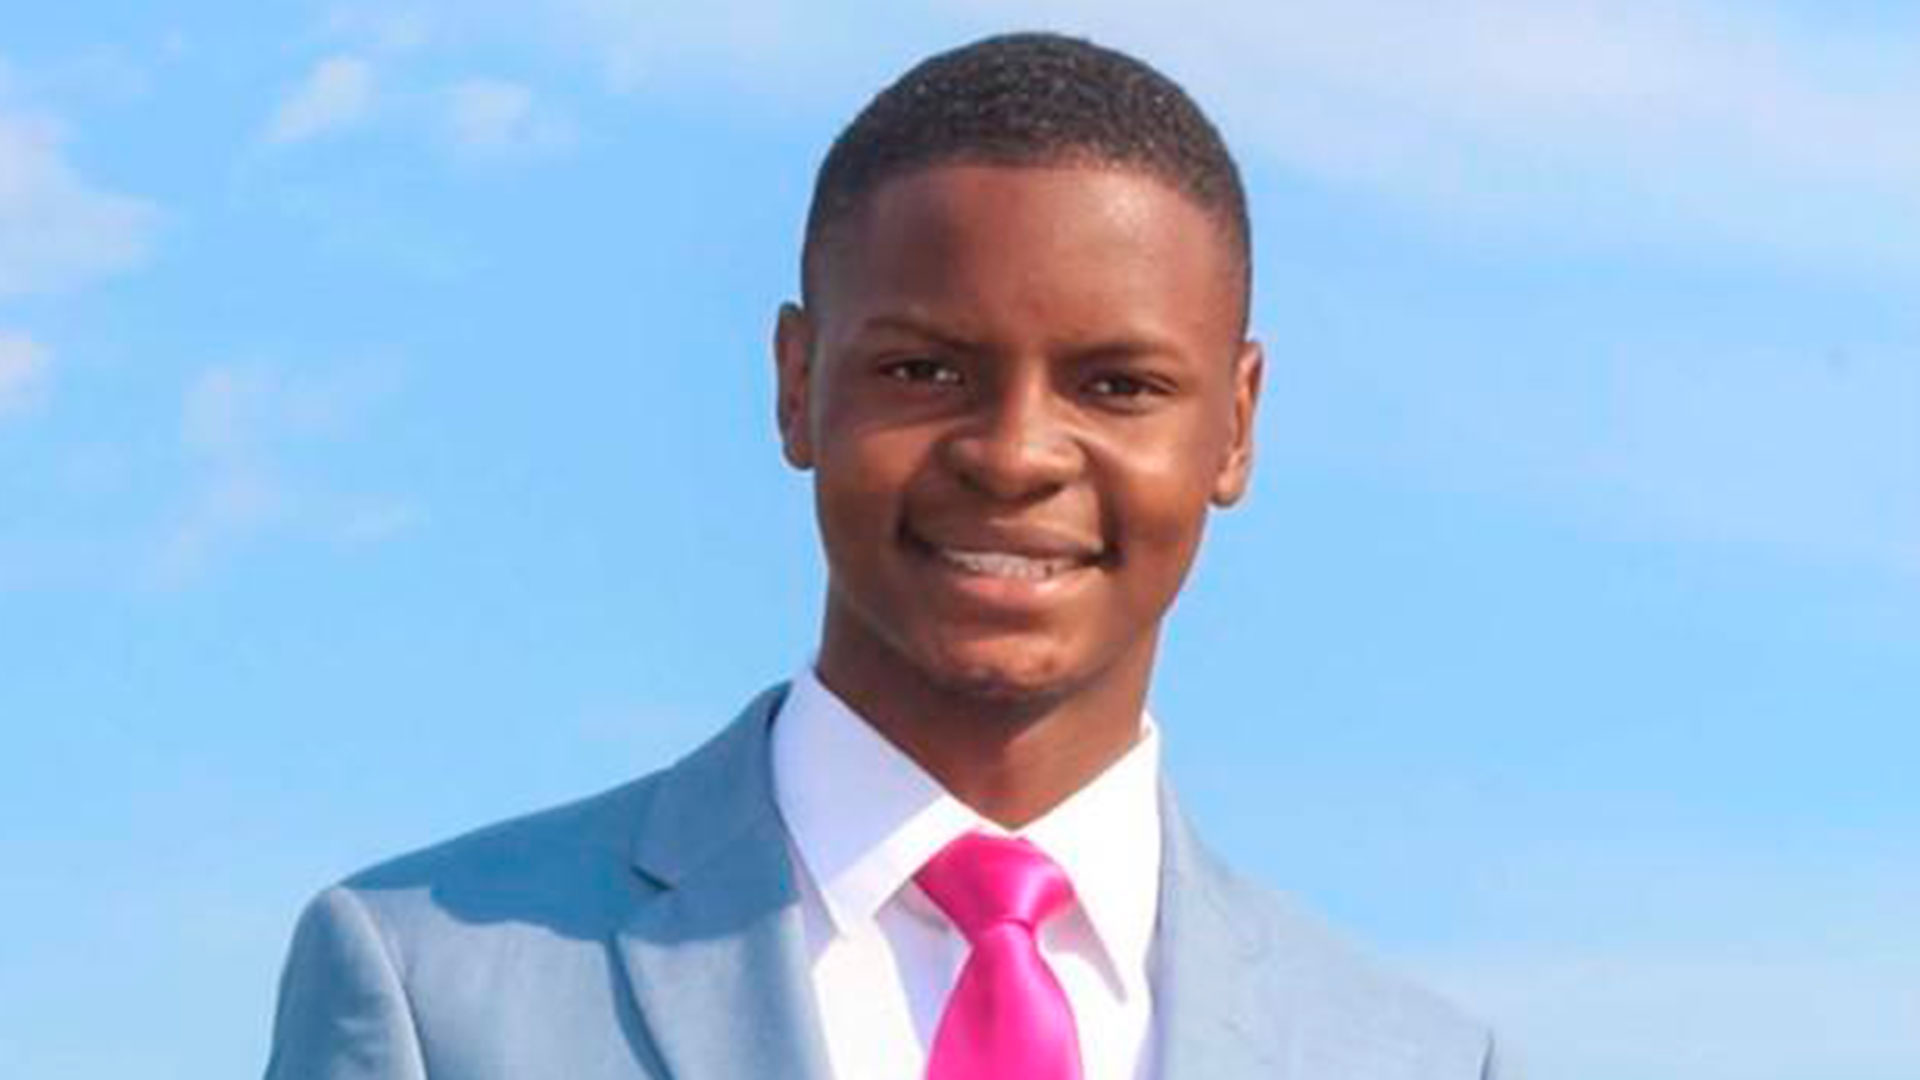 Un estudiante universitario de 18 años fue elegido alcalde de una ciudad de Arkansas